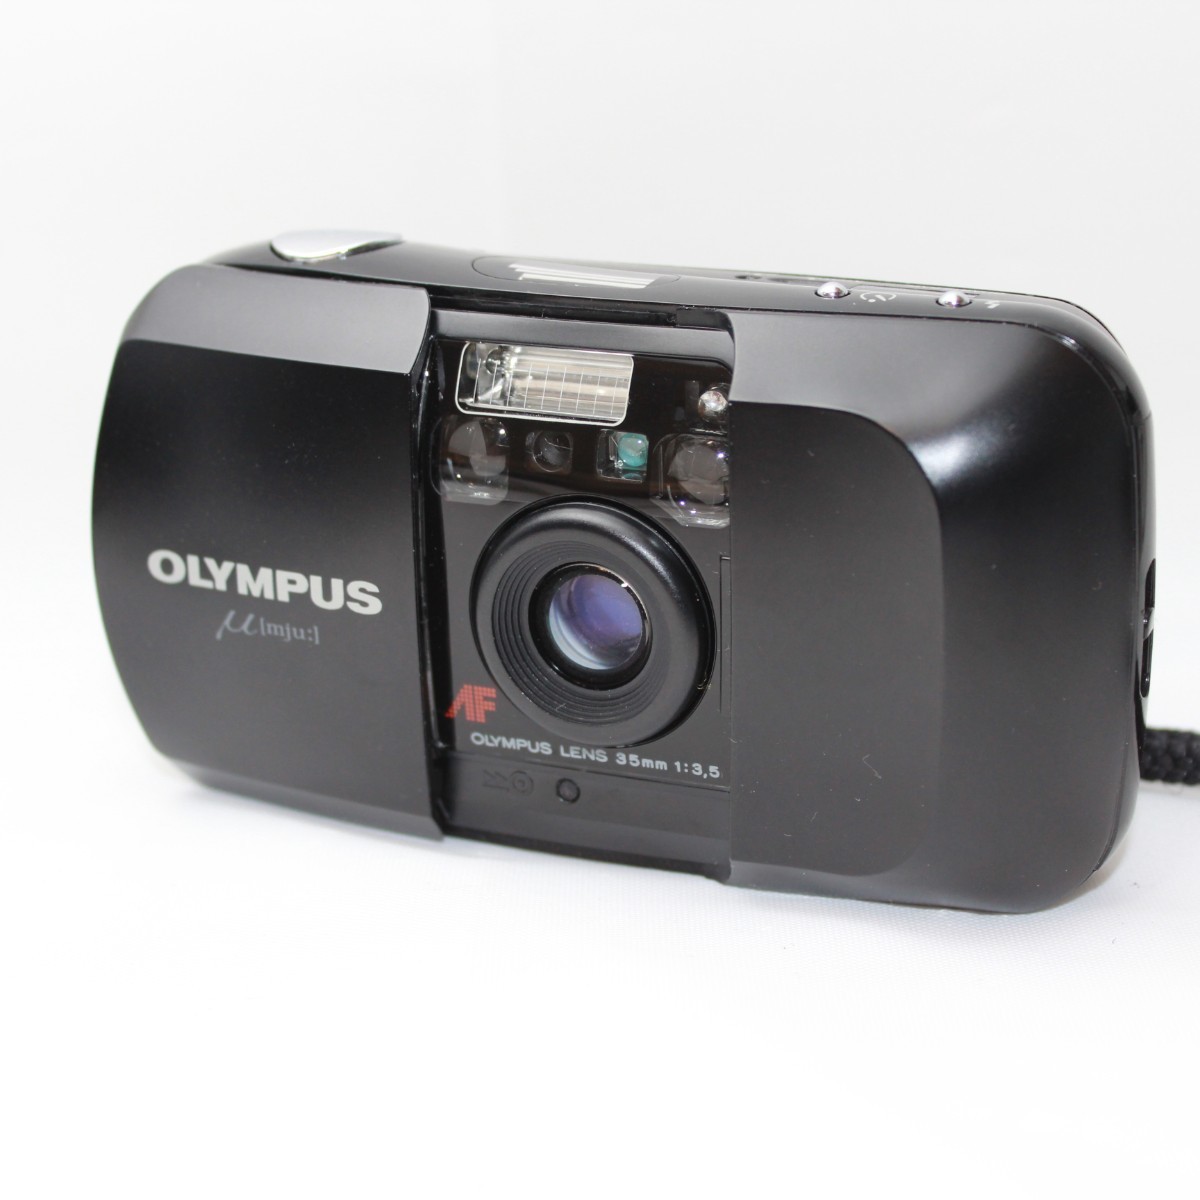 ランキングTOP10 OLYMPUS ミュー μ 初代 コンパクトフィルムカメラ 